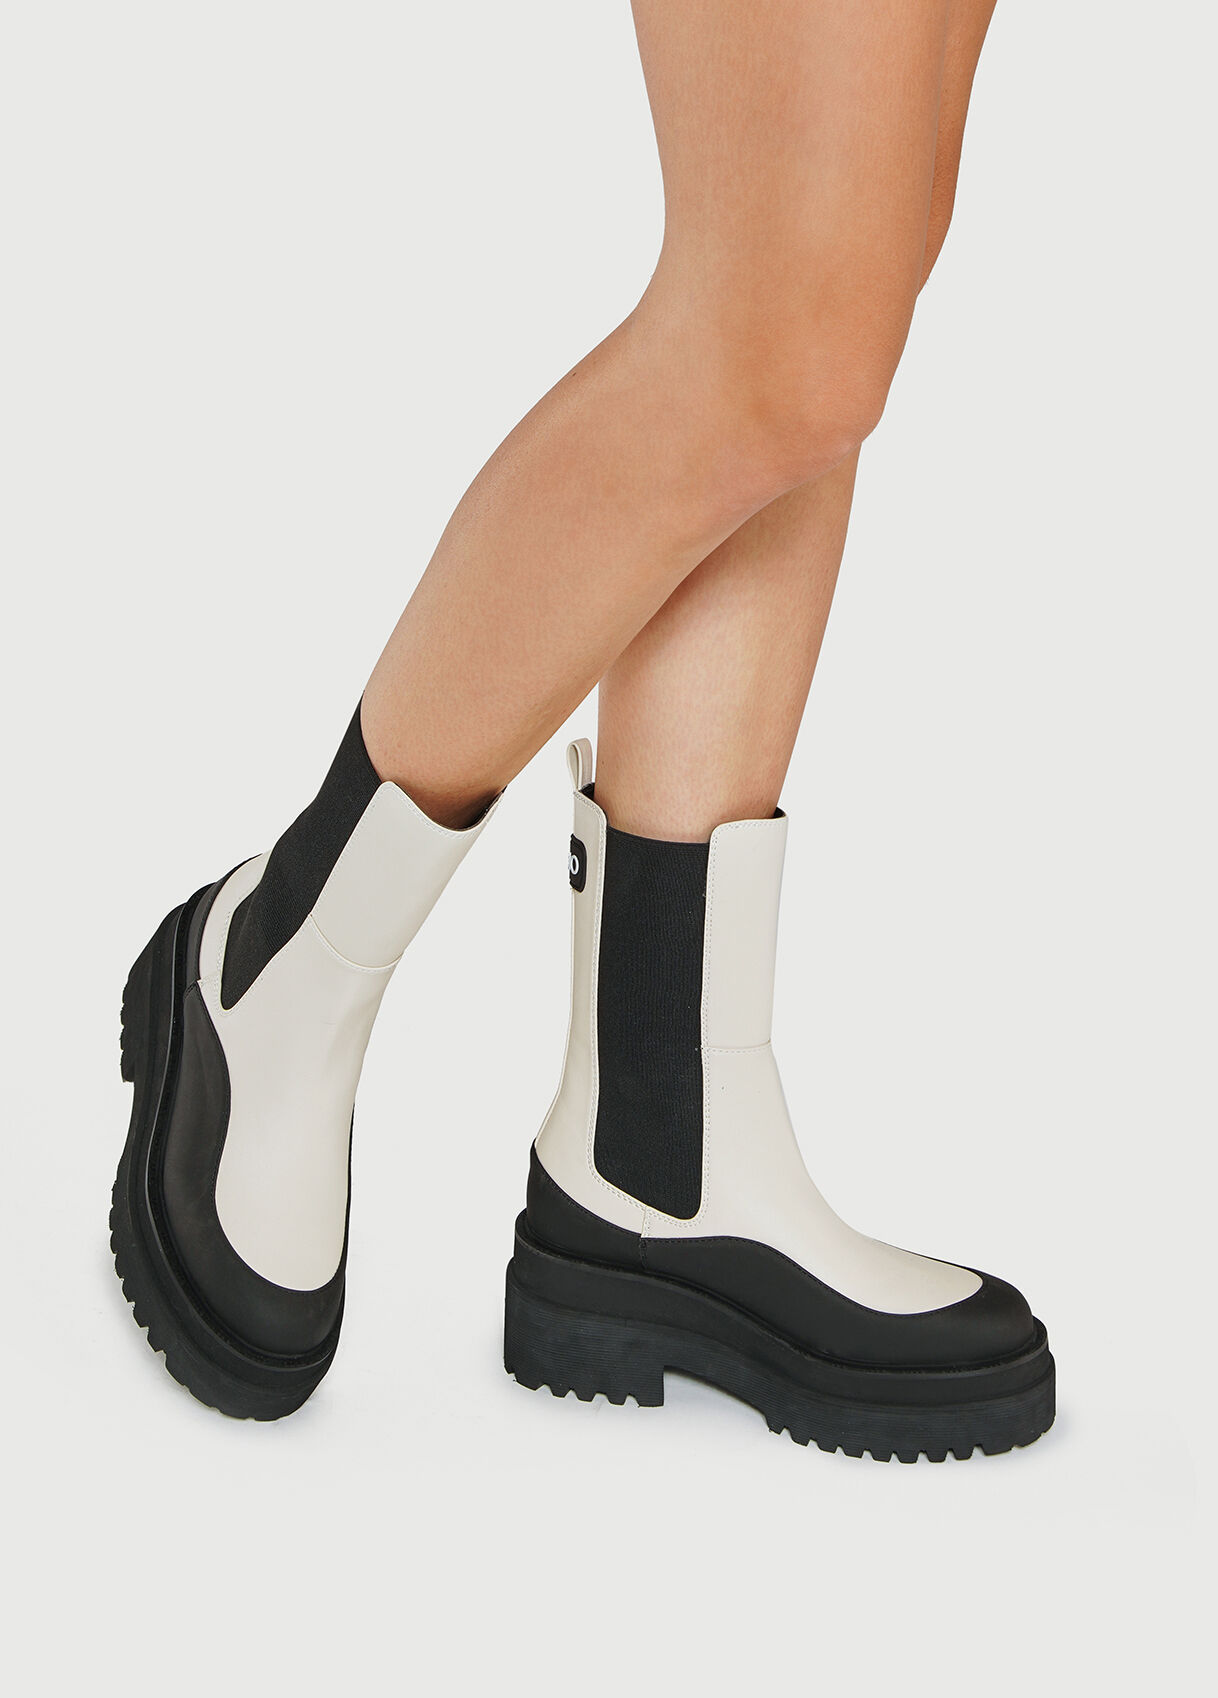 Boots Liu Jo en coloris Neutre Femme Chaussures Bottes Bottes hauteur genou 